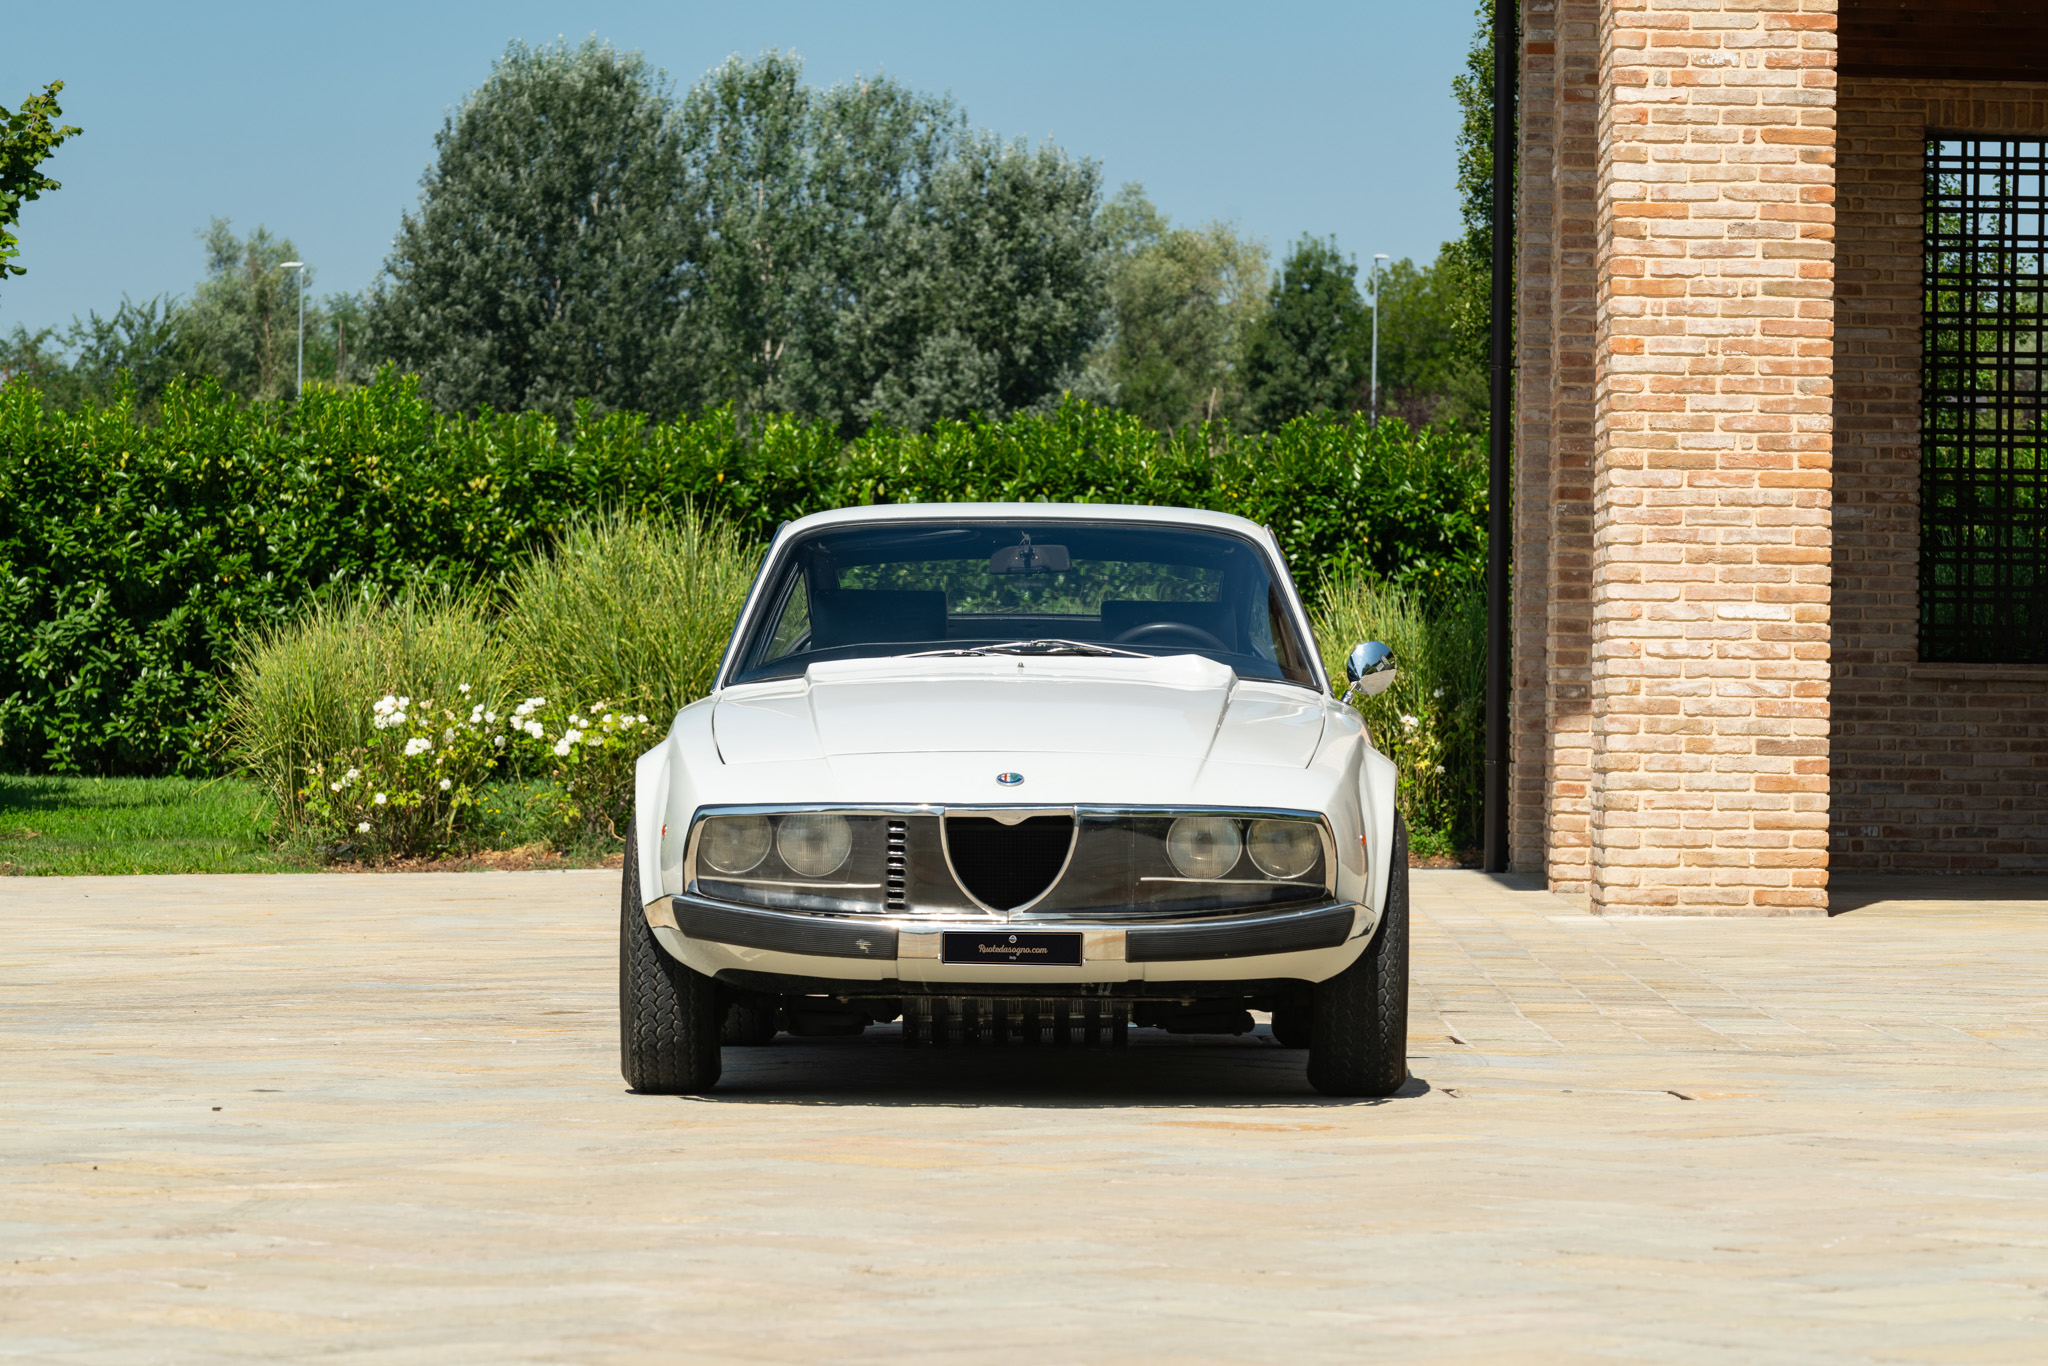 Alfa Romeo 1600 Junior Zagato 